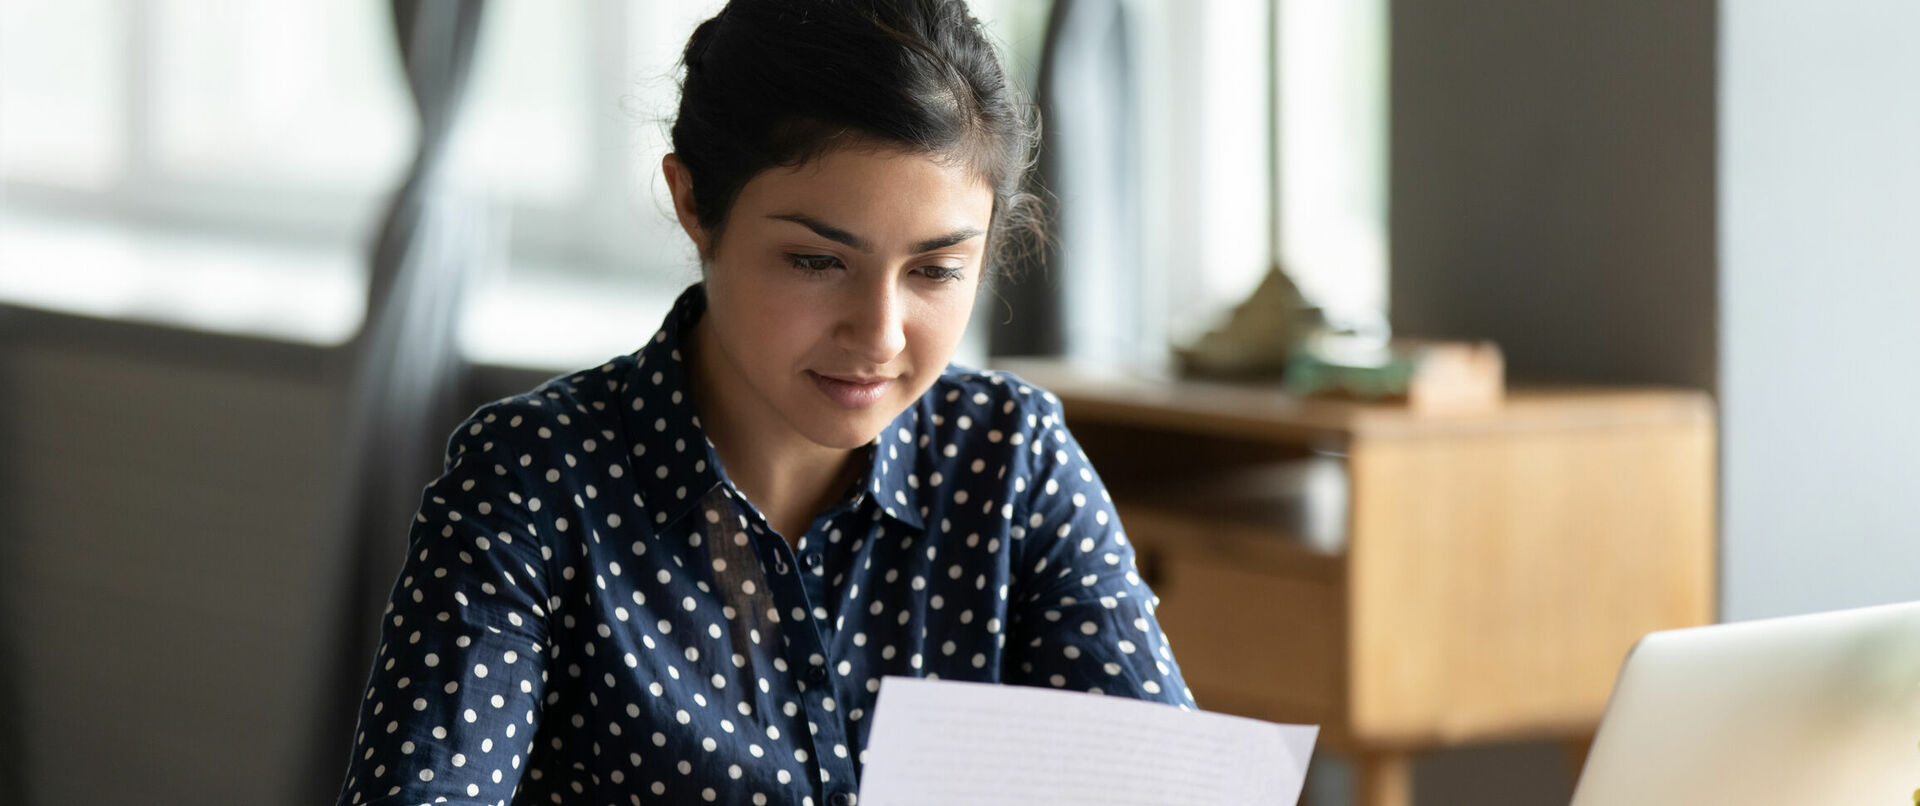 Eine junge Frau liest ein Dokument an ihrem Schreibtisch